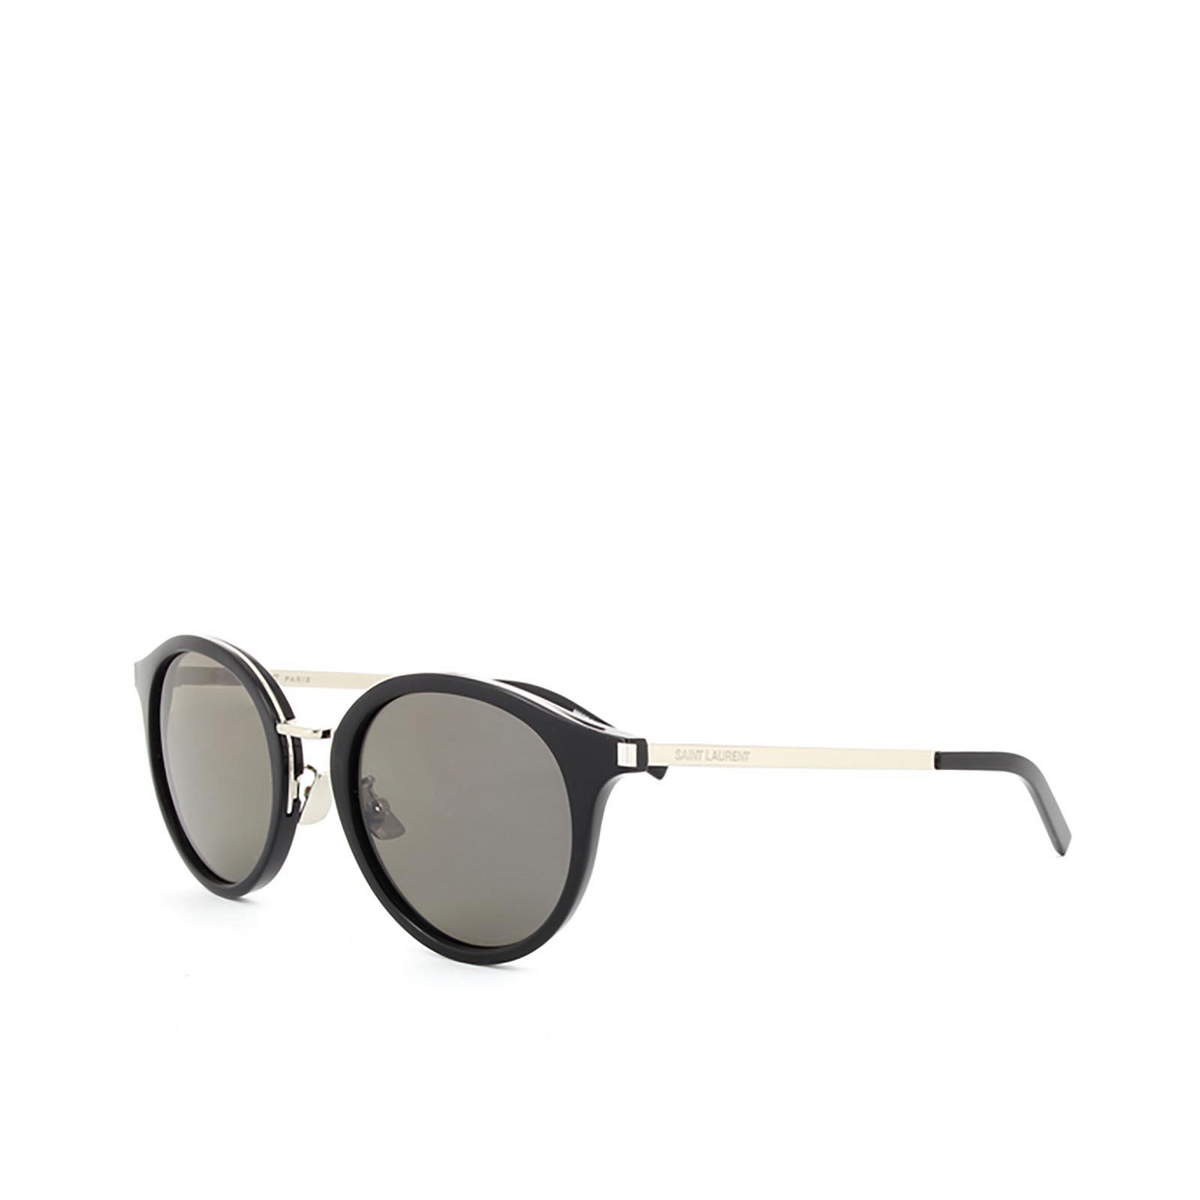 Saint Laurent® Round Sunglasses: SL 57 color 002 Black - 2/3